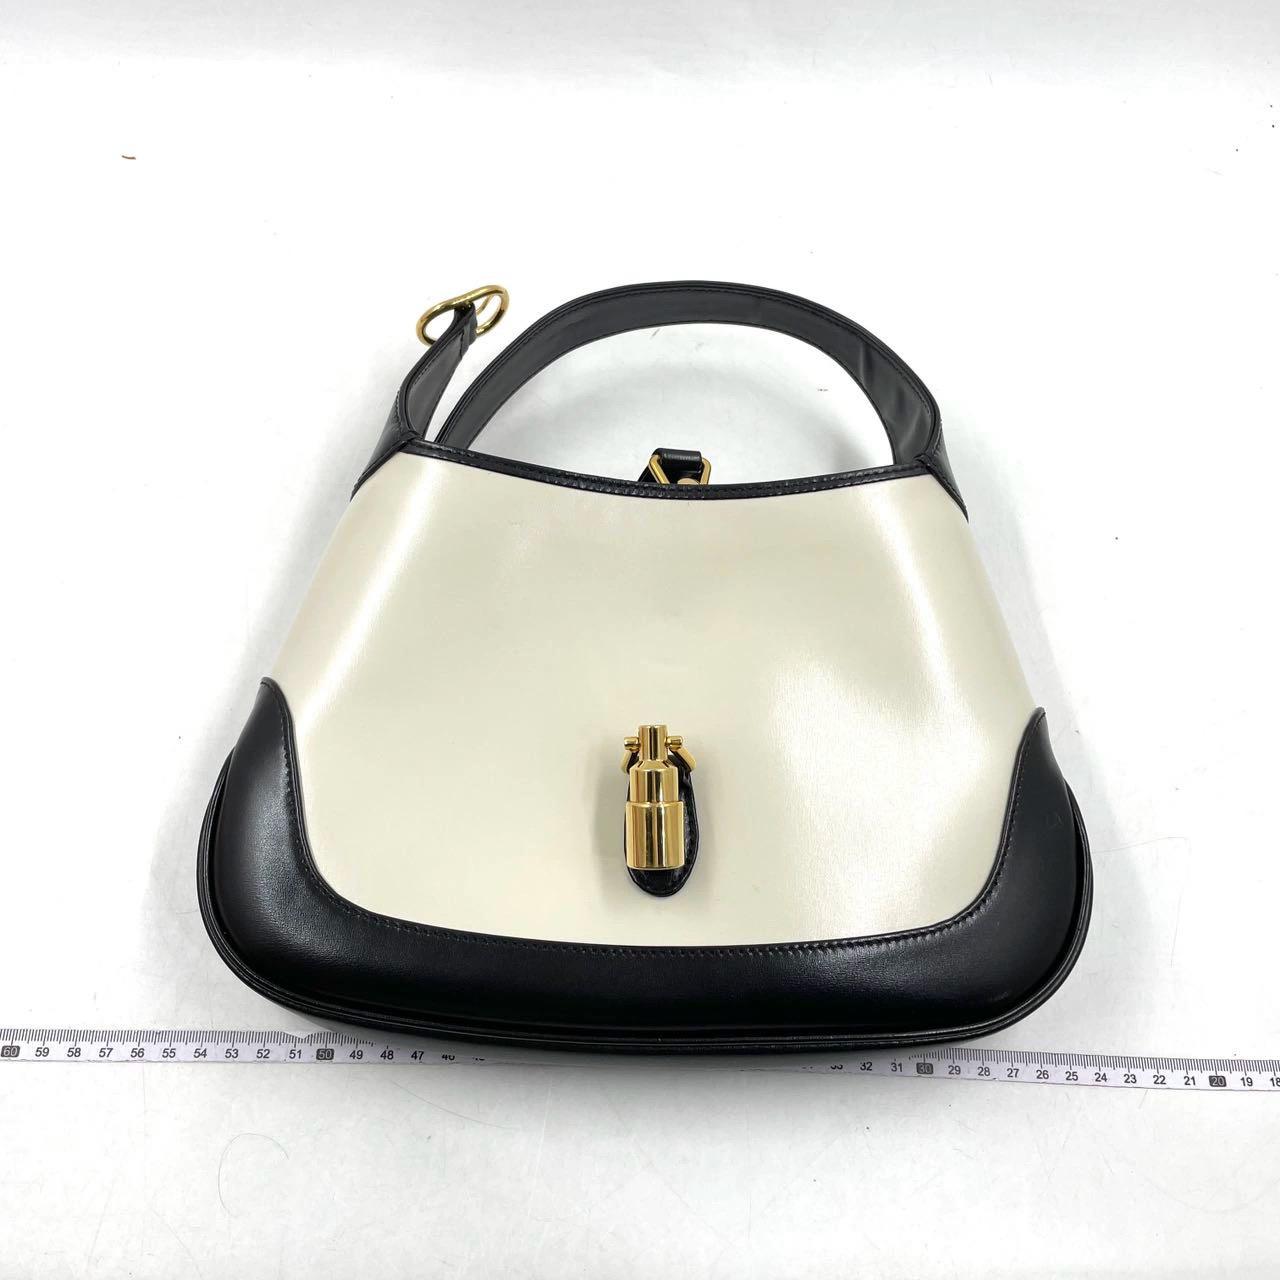 Die Gucci Jackie 1961 Black and White Small Bag ist eine moderne Interpretation eines kultigen Designs. Sie ist aus Leder gefertigt, hat eine strukturierte Silhouette und verfügt über einen Crossbody-Riemen, damit Sie Ihre Essentials überallhin